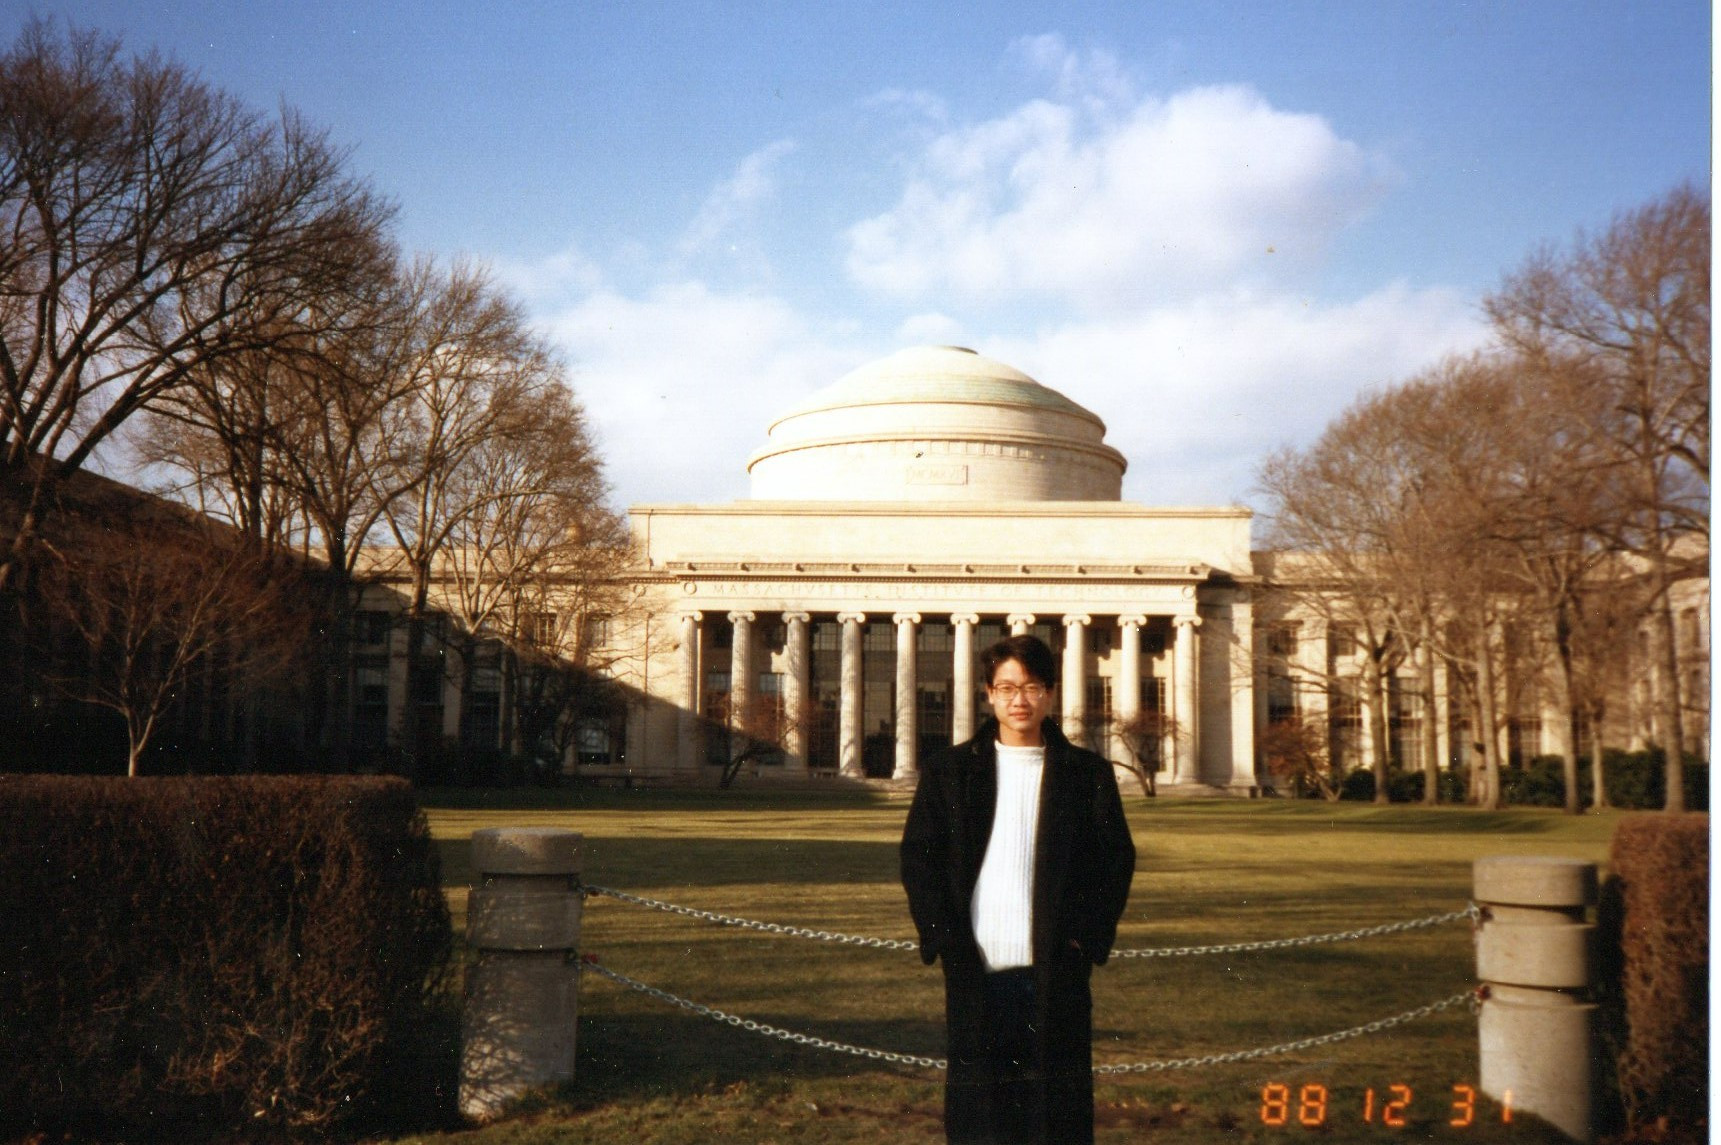 MIT 1988